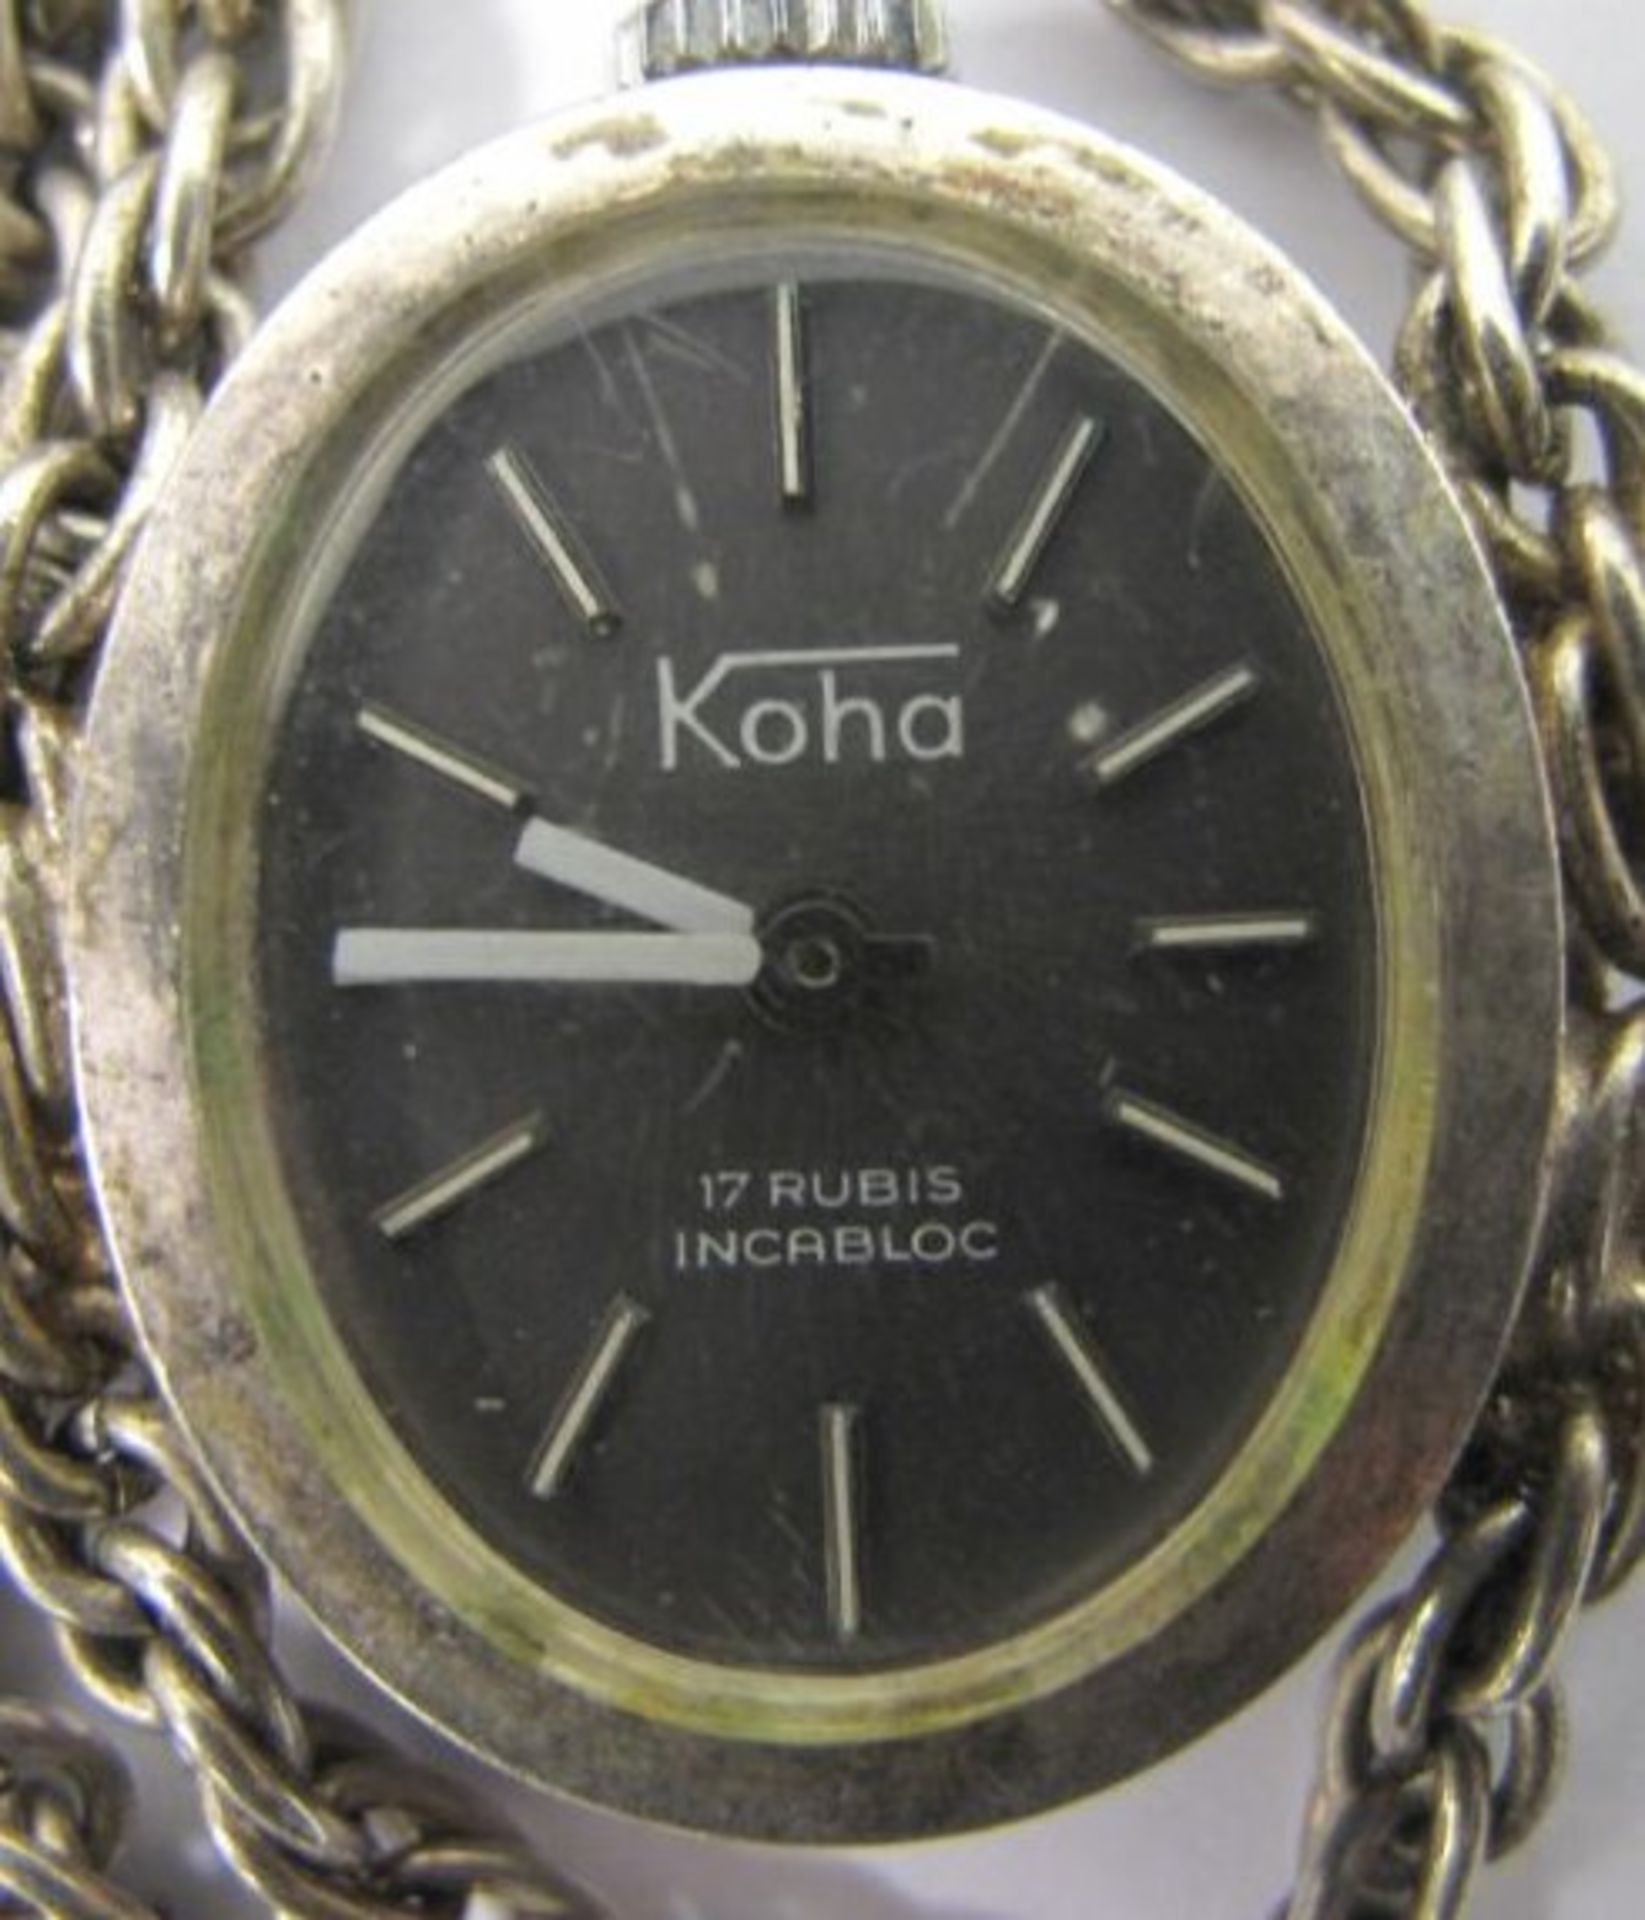 Damenumhängeuhr "Koha", 925er Silber, zus. 36,2g, Werk läuft - Bild 3 aus 3